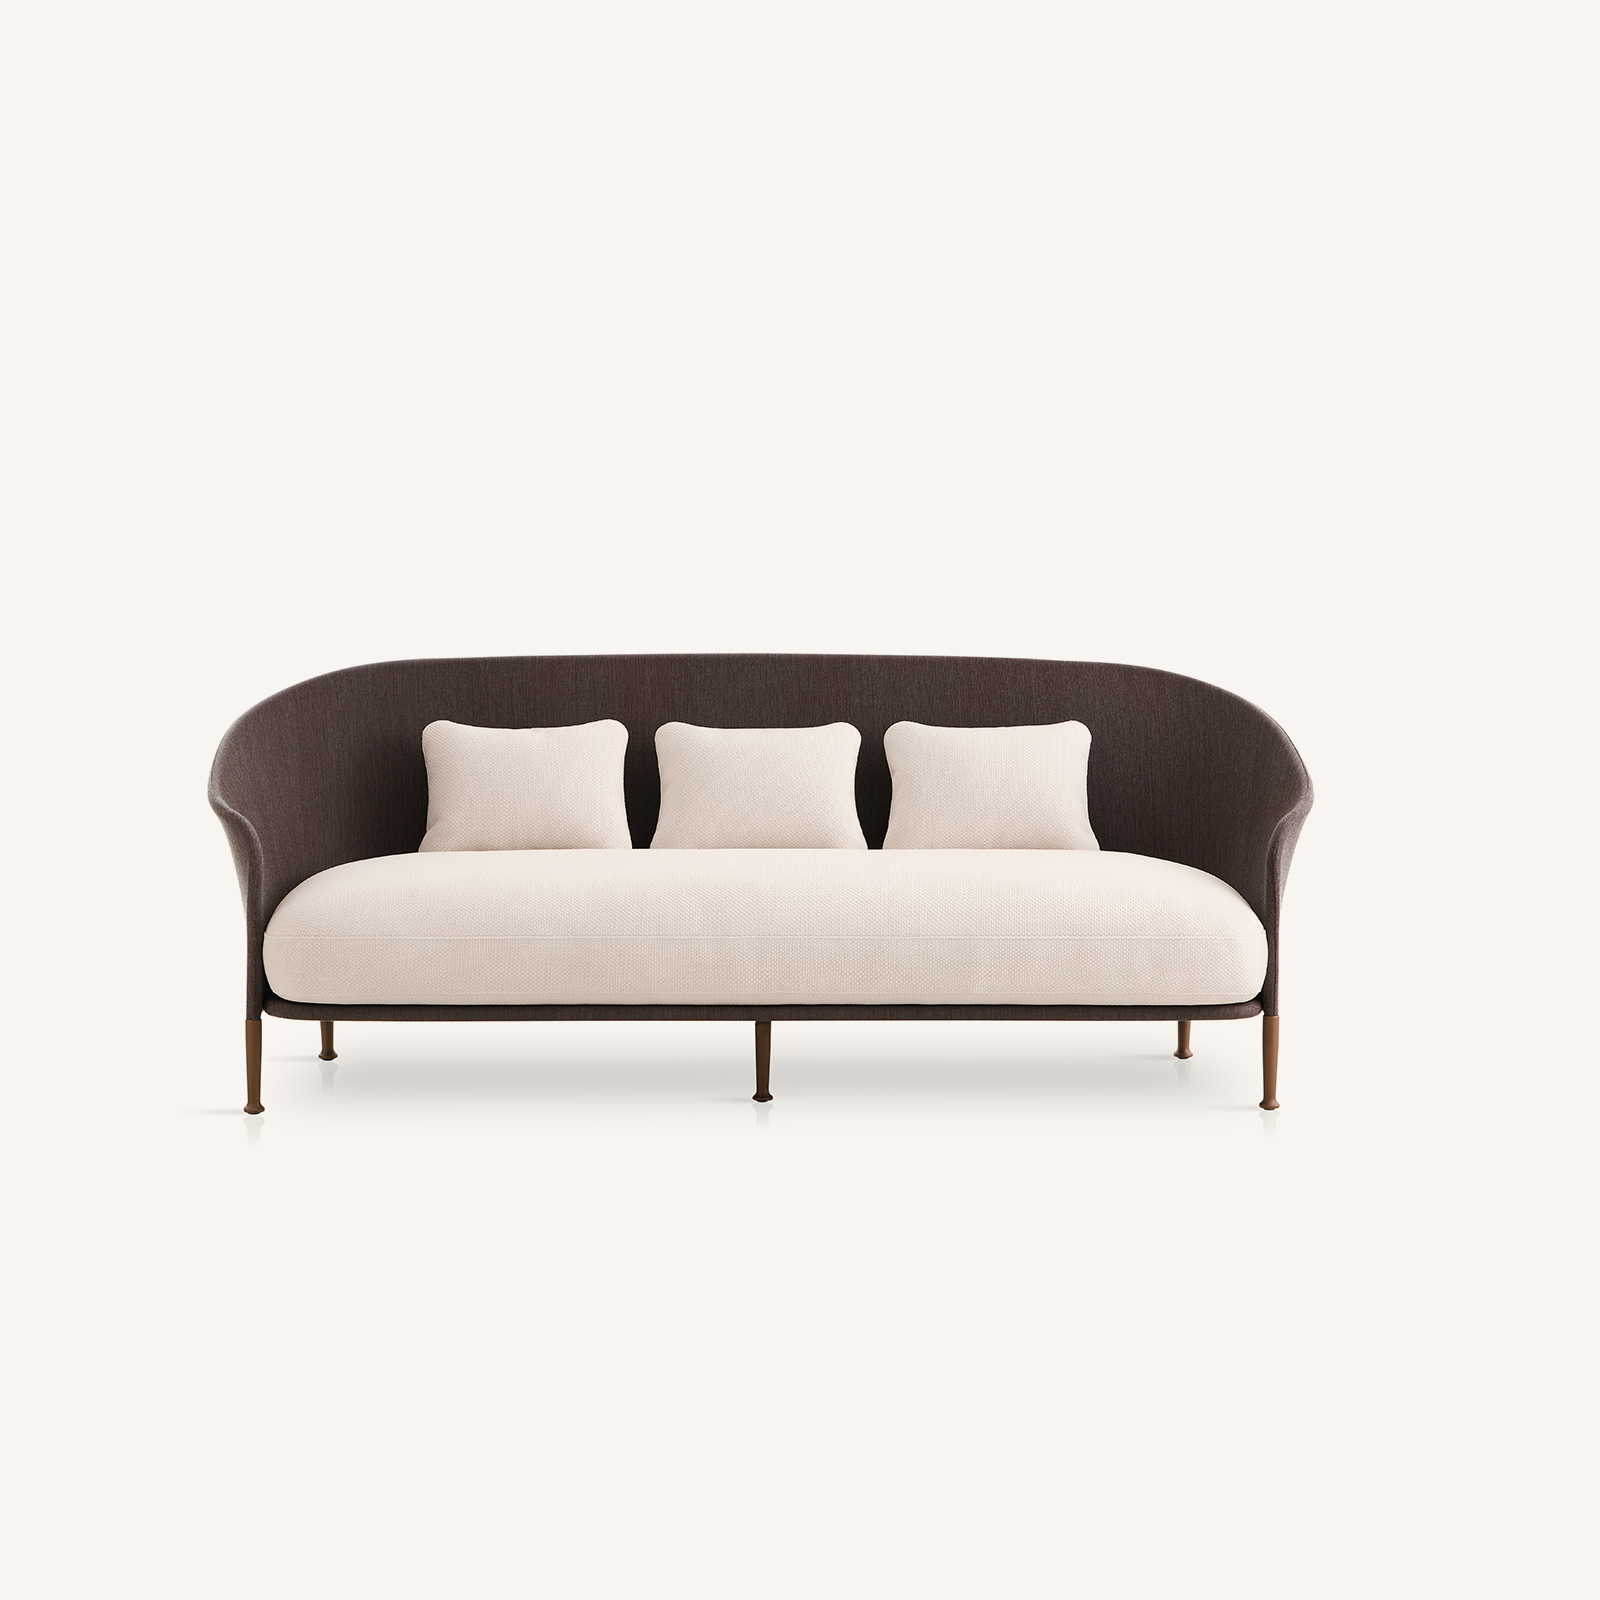 muebles de exterior - sofás - sofá bajo liz